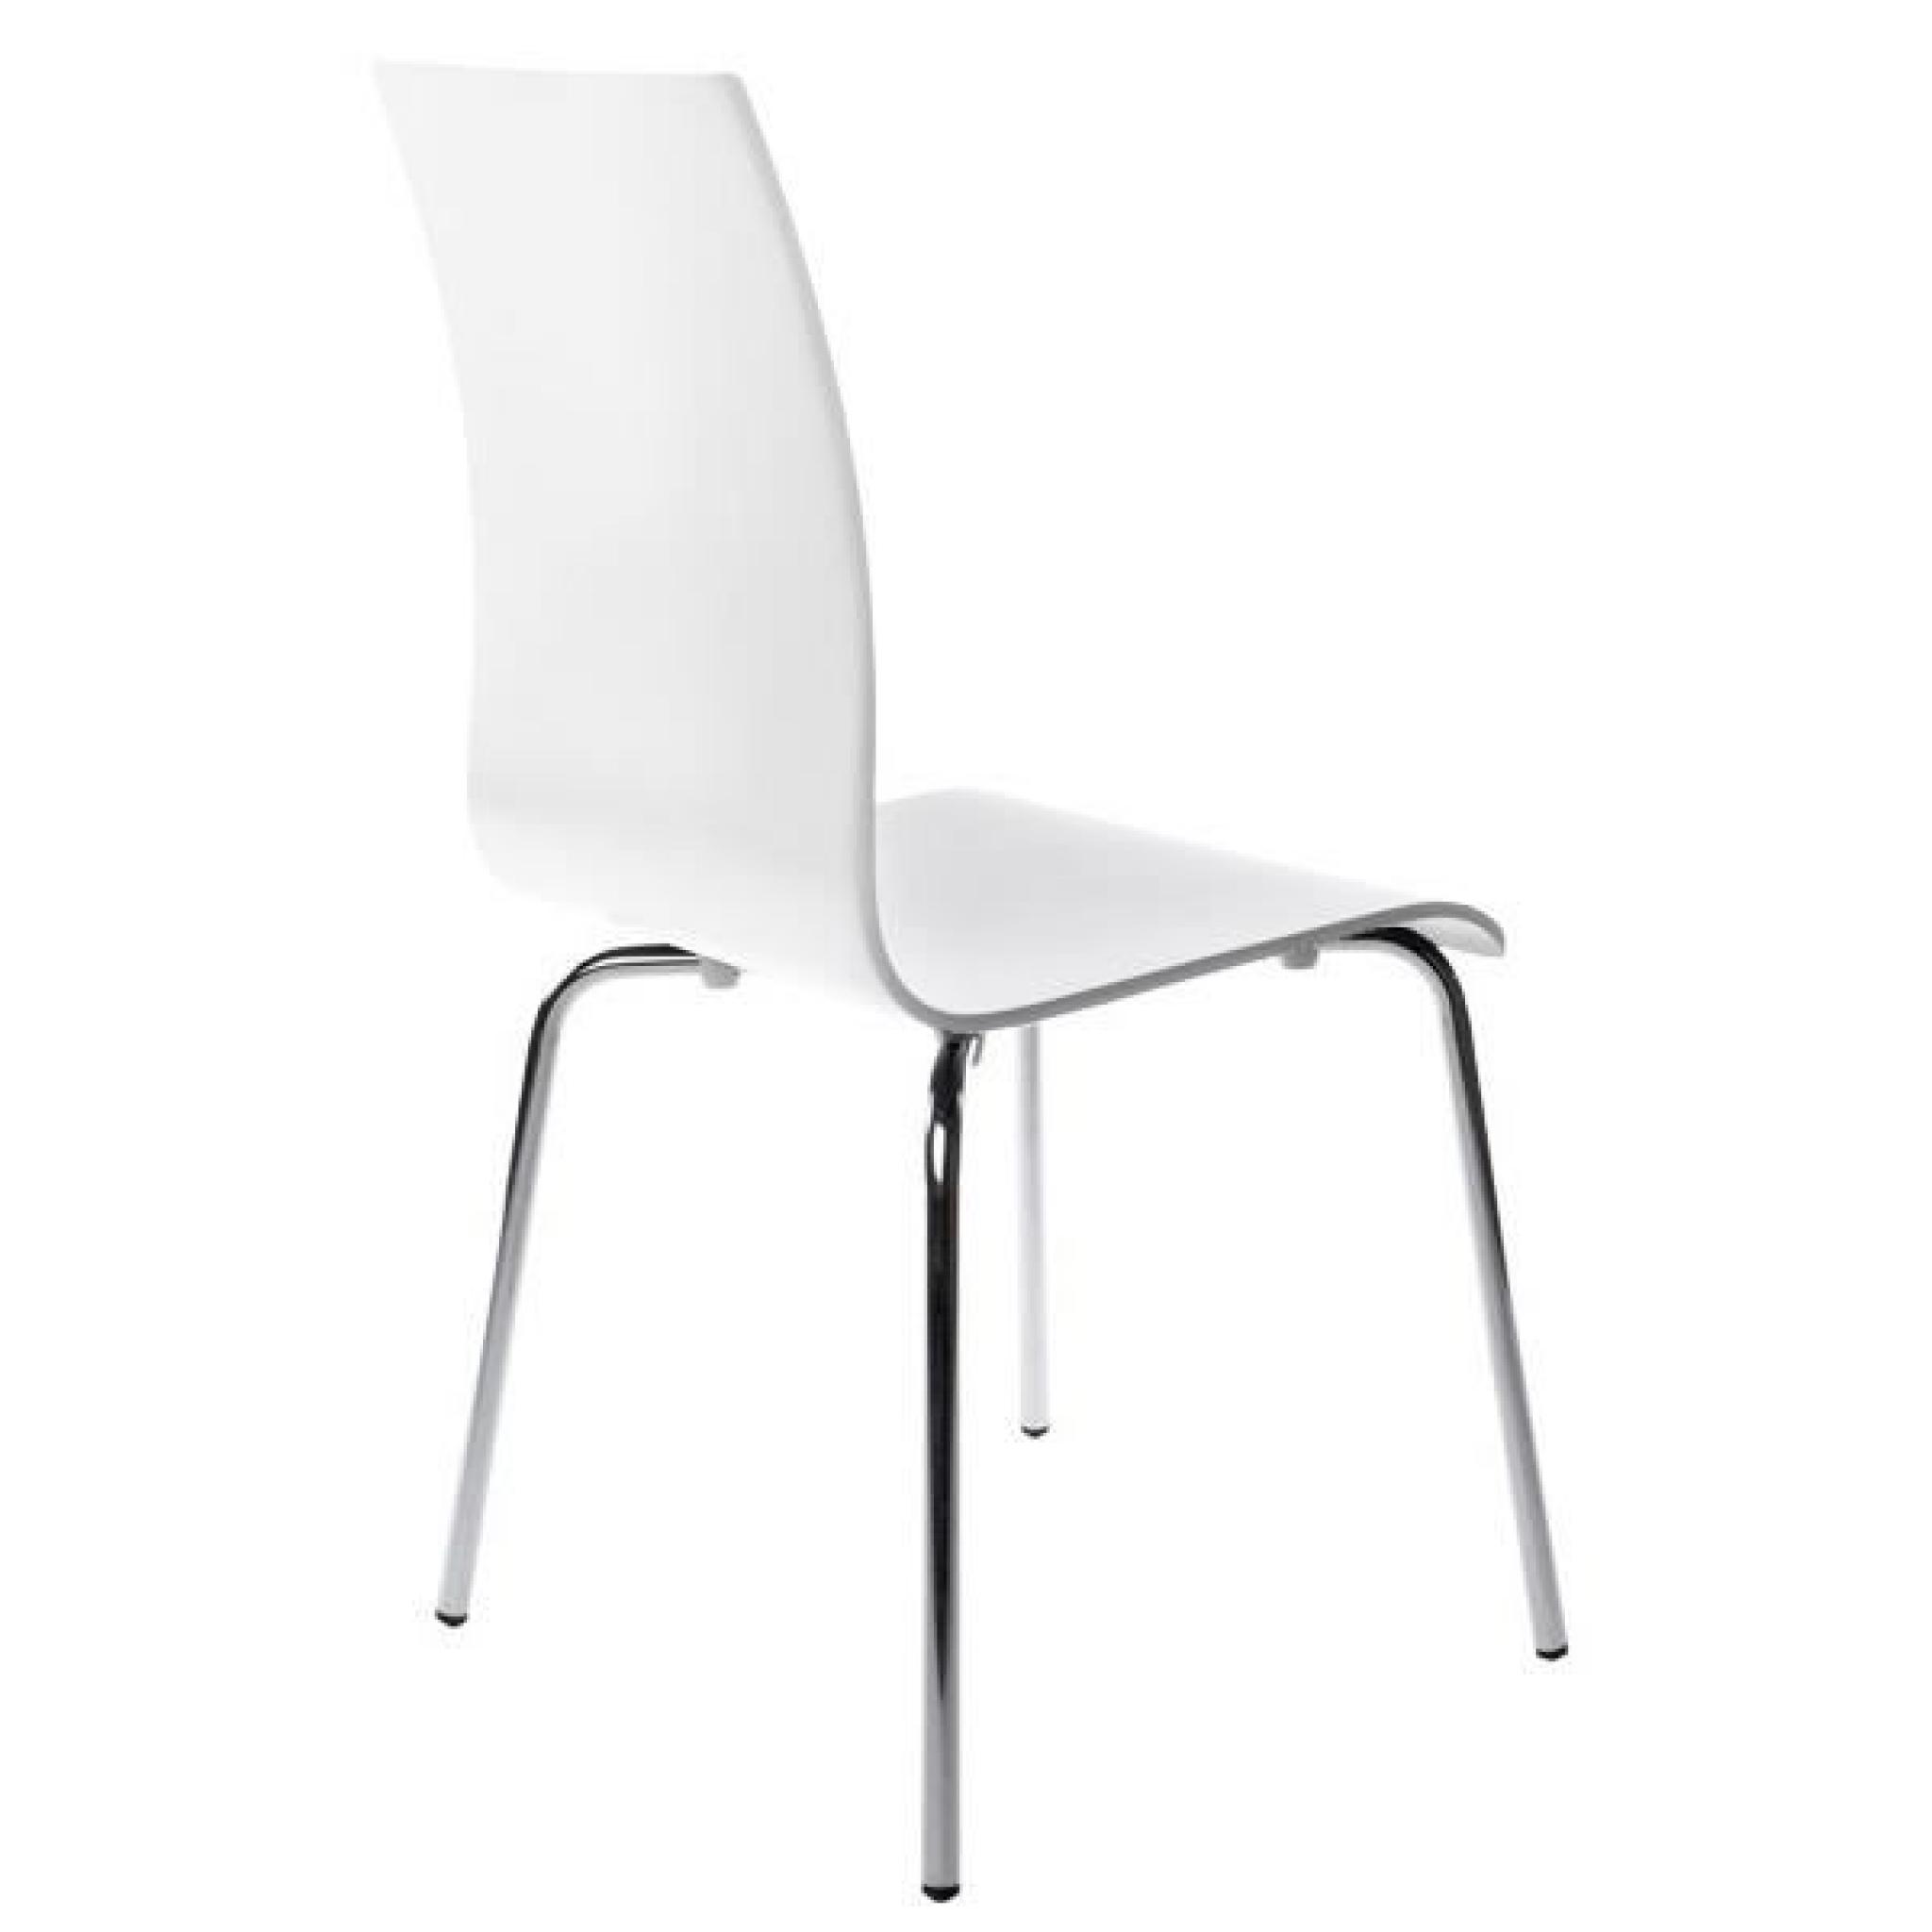 CLASSIC - Chaise de cuisine en bois peint blanc